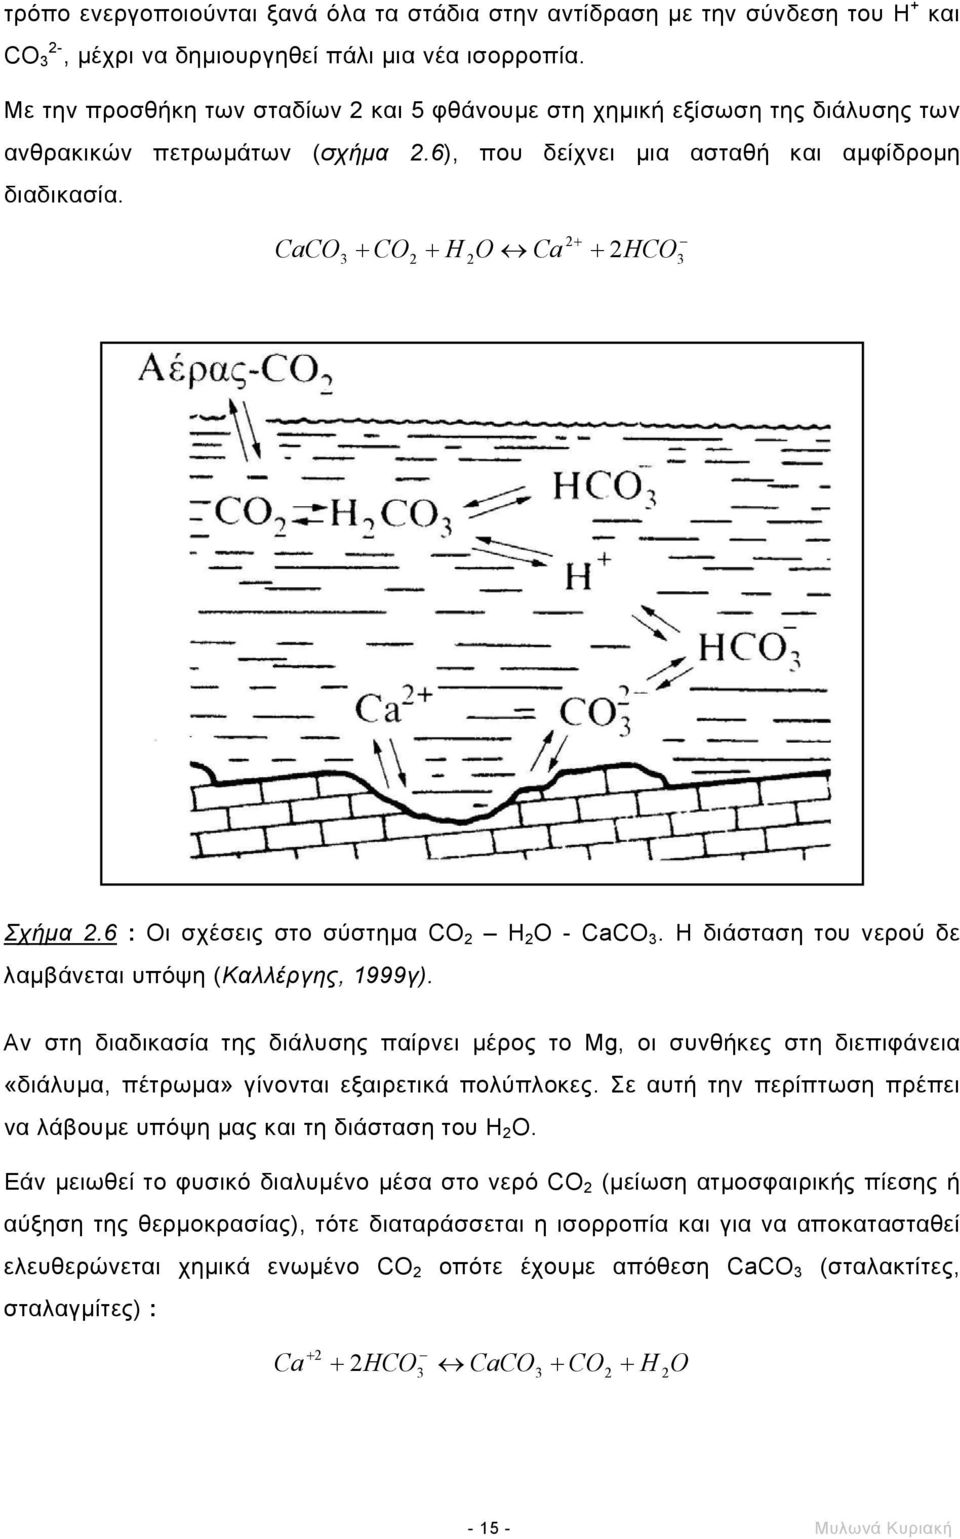 CaCO 3 2HCO 2 + + CO2 + H 2O Ca + 3 Σχήµα 2.6 : Οι σχέσεις στο σύστηµα CO 2 Η 2 Ο - CaCO 3. Η διάσταση του νερού δε λαµβάνεται υπόψη (Καλλέργης, 1999γ).